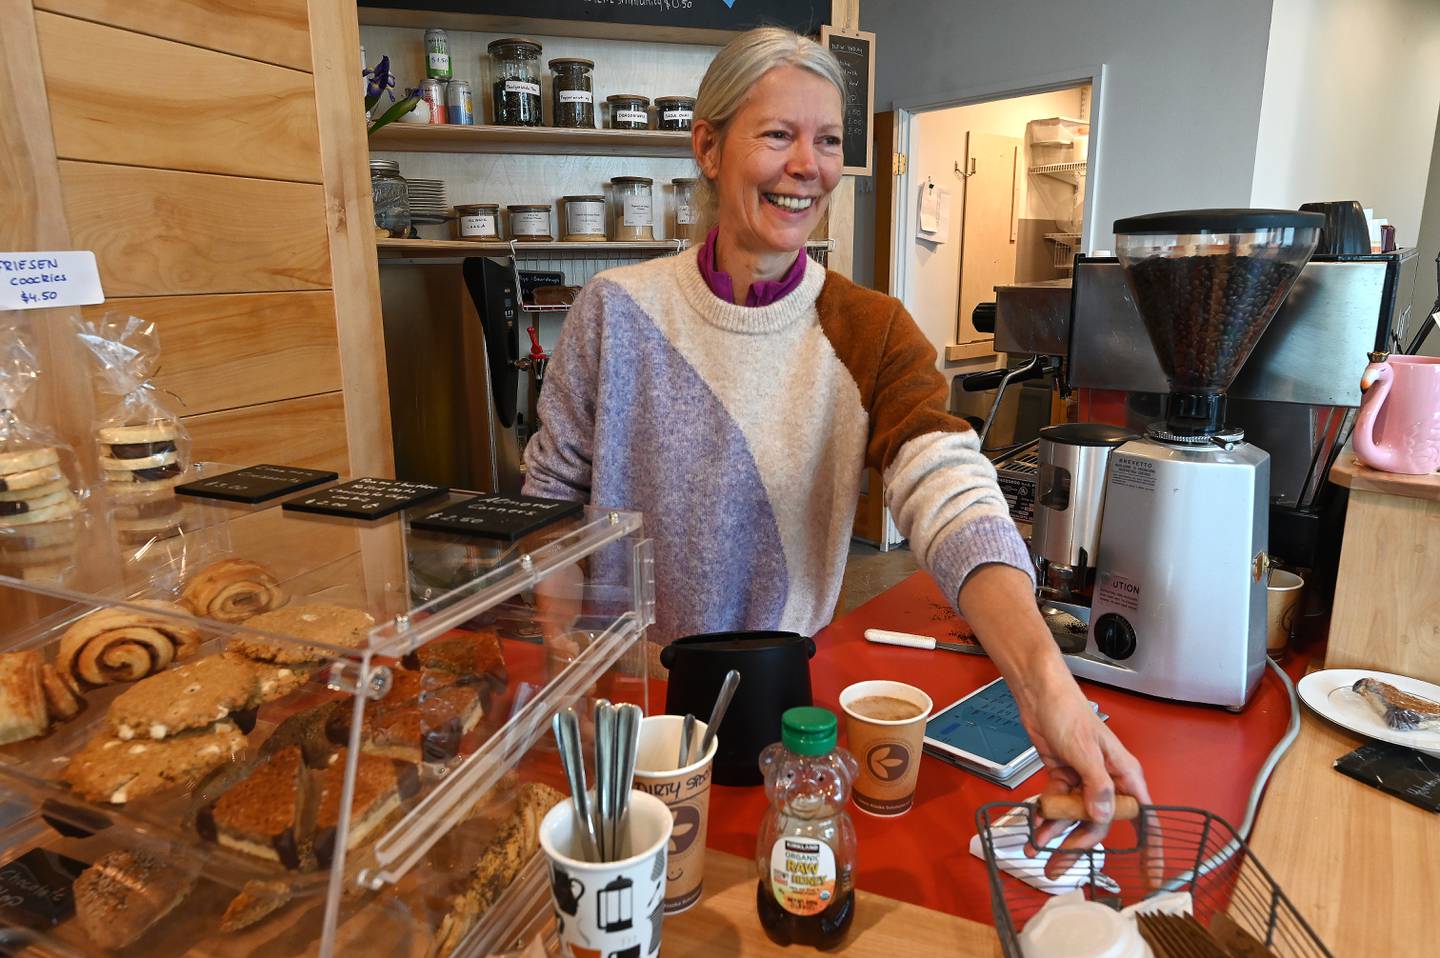 Kaffee Klatsch owner Birgit Hagedorn